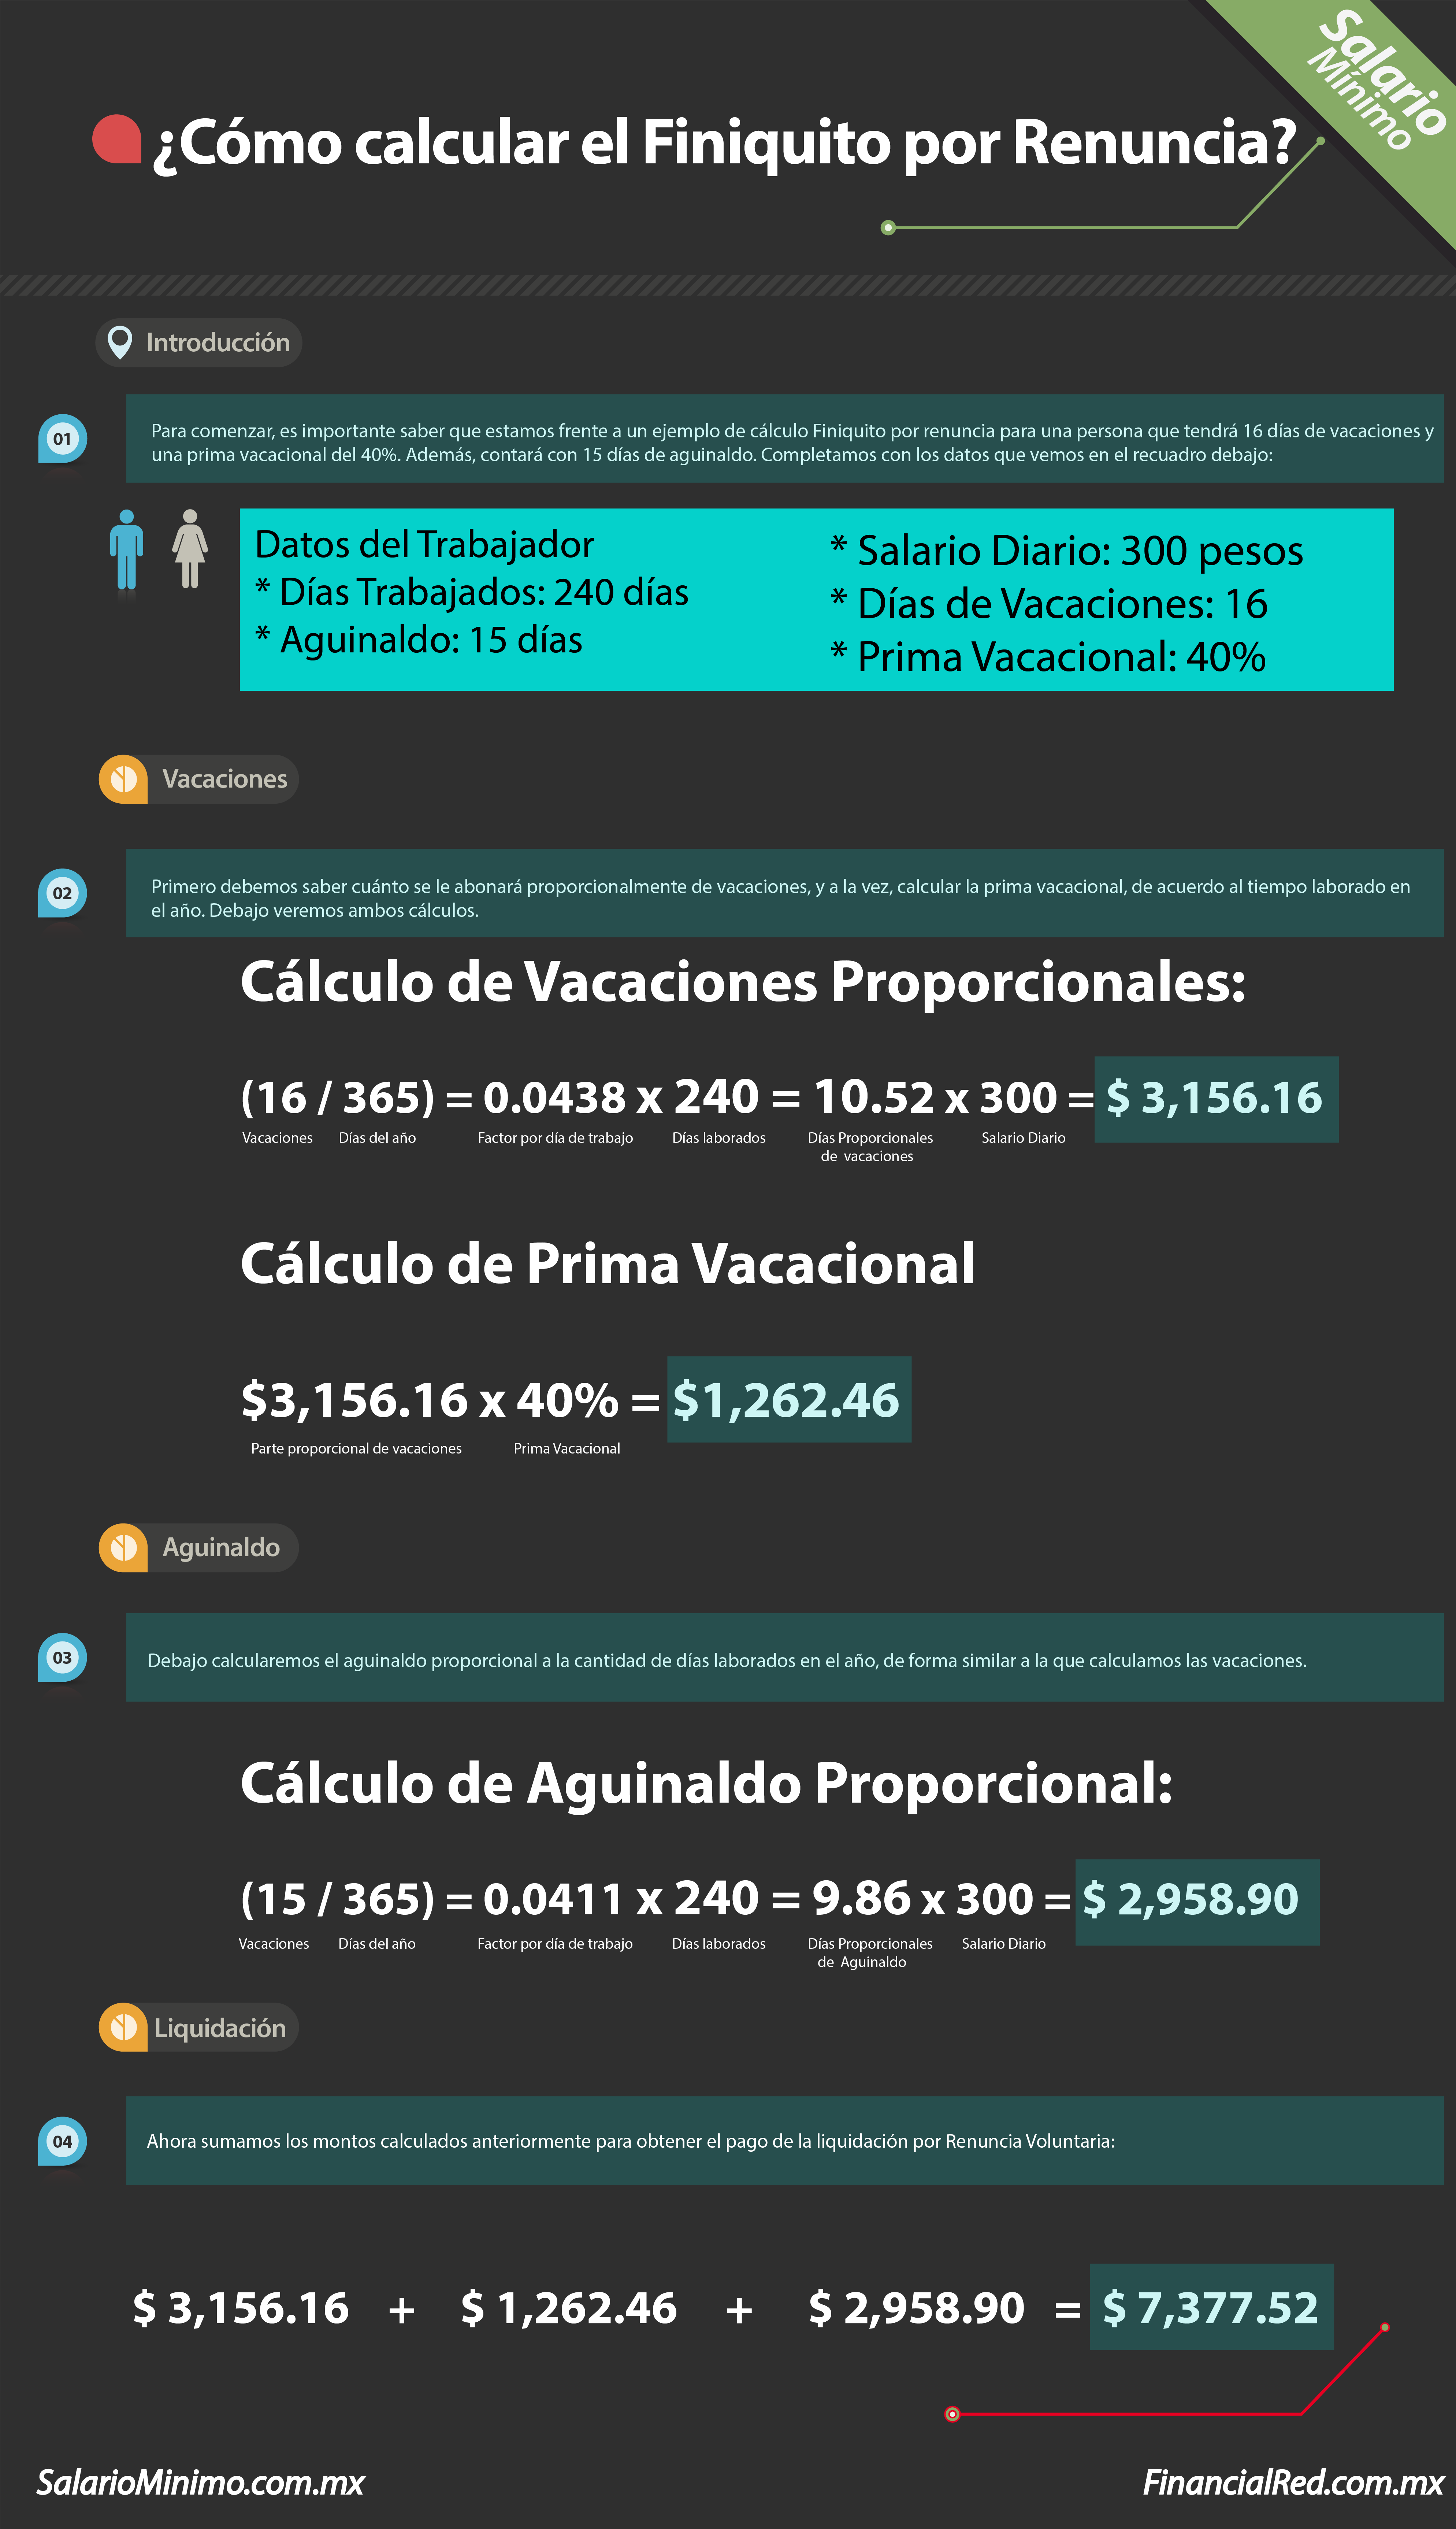 Orbita Sacrificio dueña Cálculo de finiquito - SalarioMinimo.com.mx